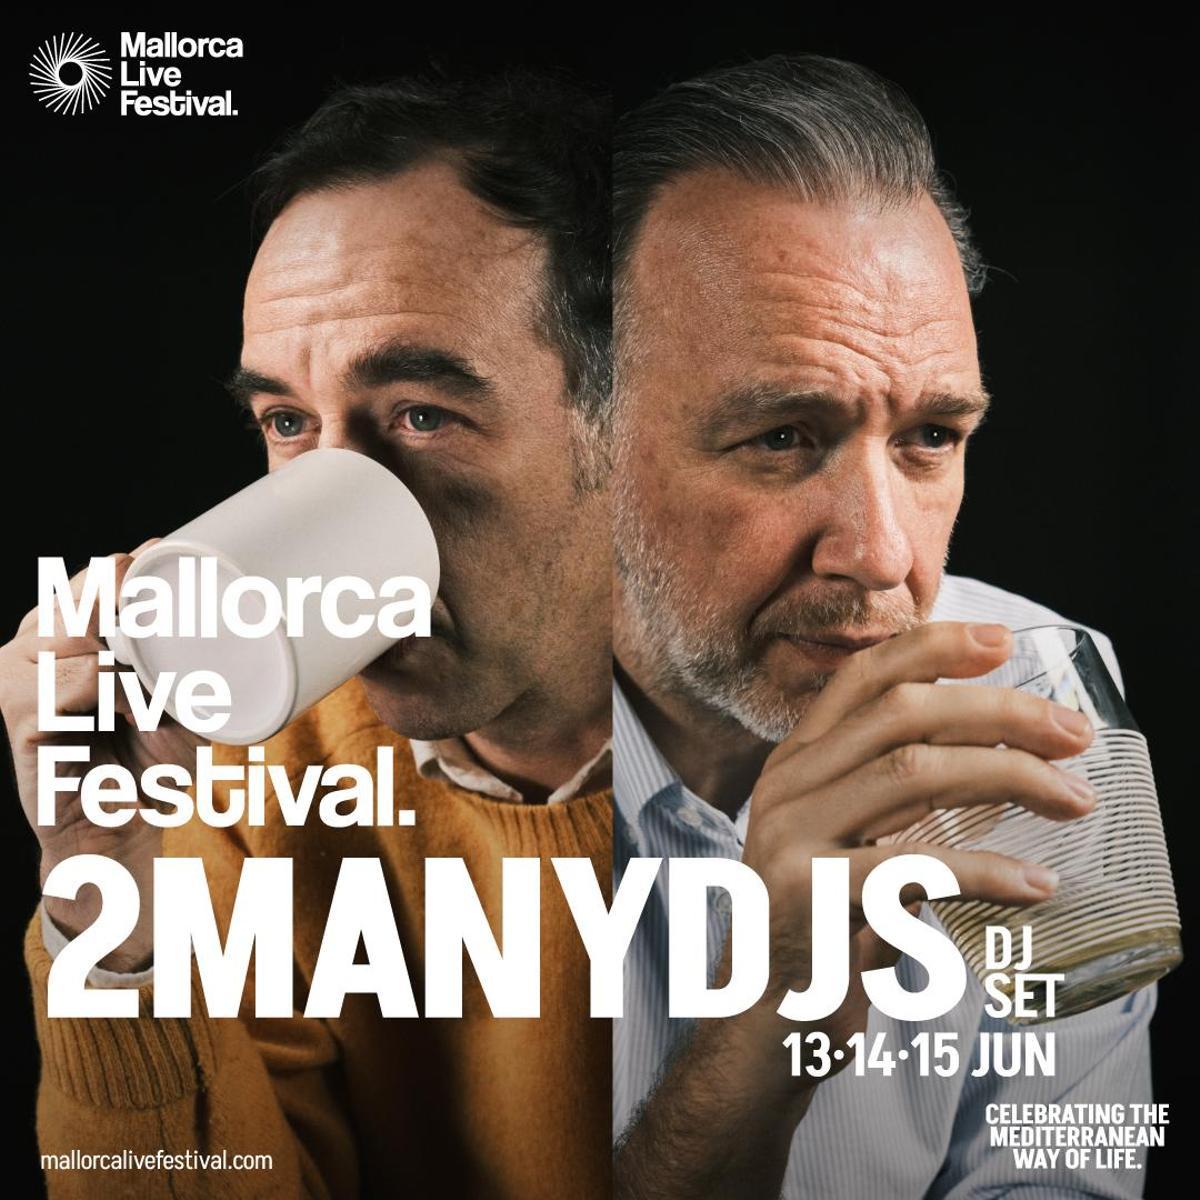 Cartel del Mallorca Live Festival con 2manydjs.